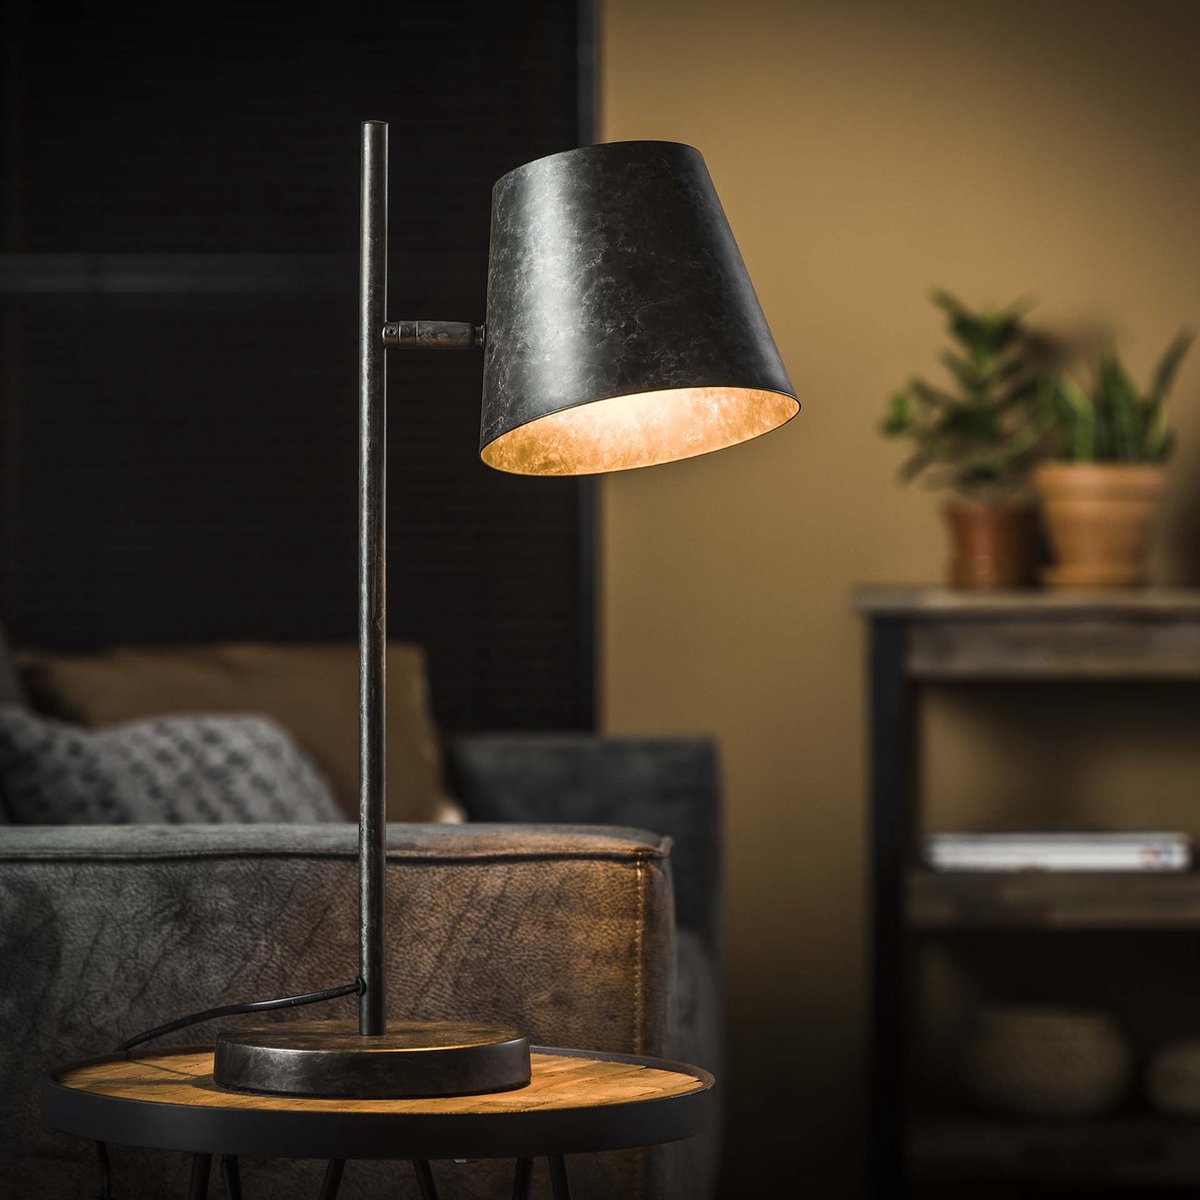 Tafellamp verstelbare metalen kap | 1 lichts | zwart / grijs | bureaulamp | modern / industrieel design